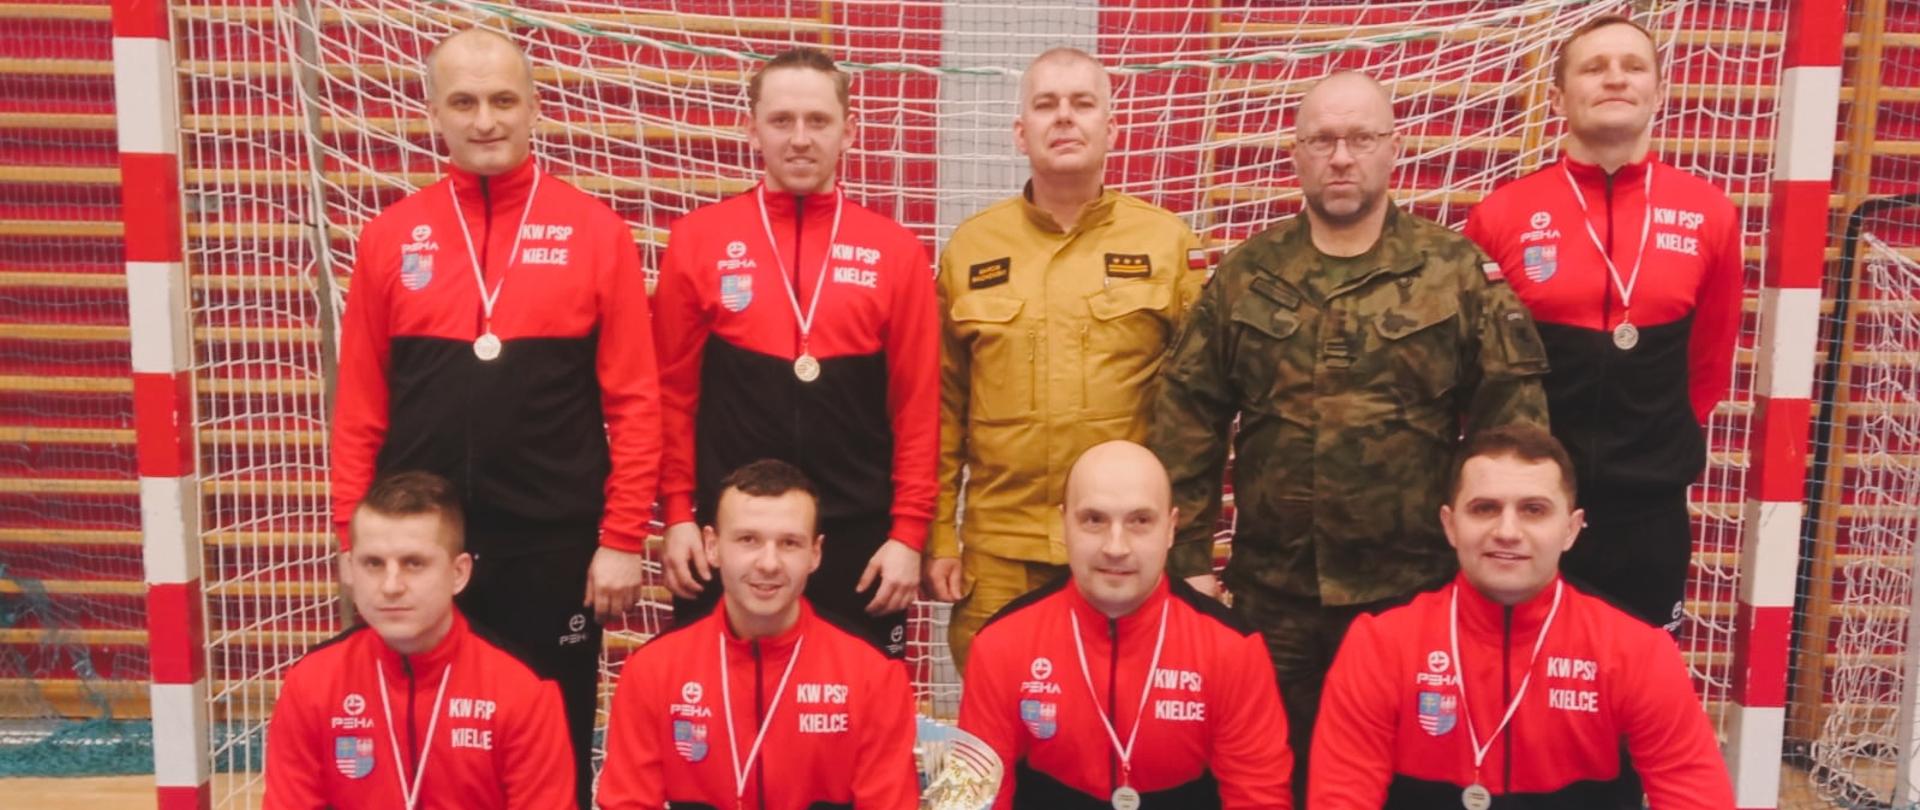 Na zdjęciu drużyna KW PSP Kielce, która zajęła II miejsce w turnieju piłki nożnej. Zawodnicy pozują na tle bramki wspólnie z zastępcą komendanta PSP oraz Komendantem CPdMZ.